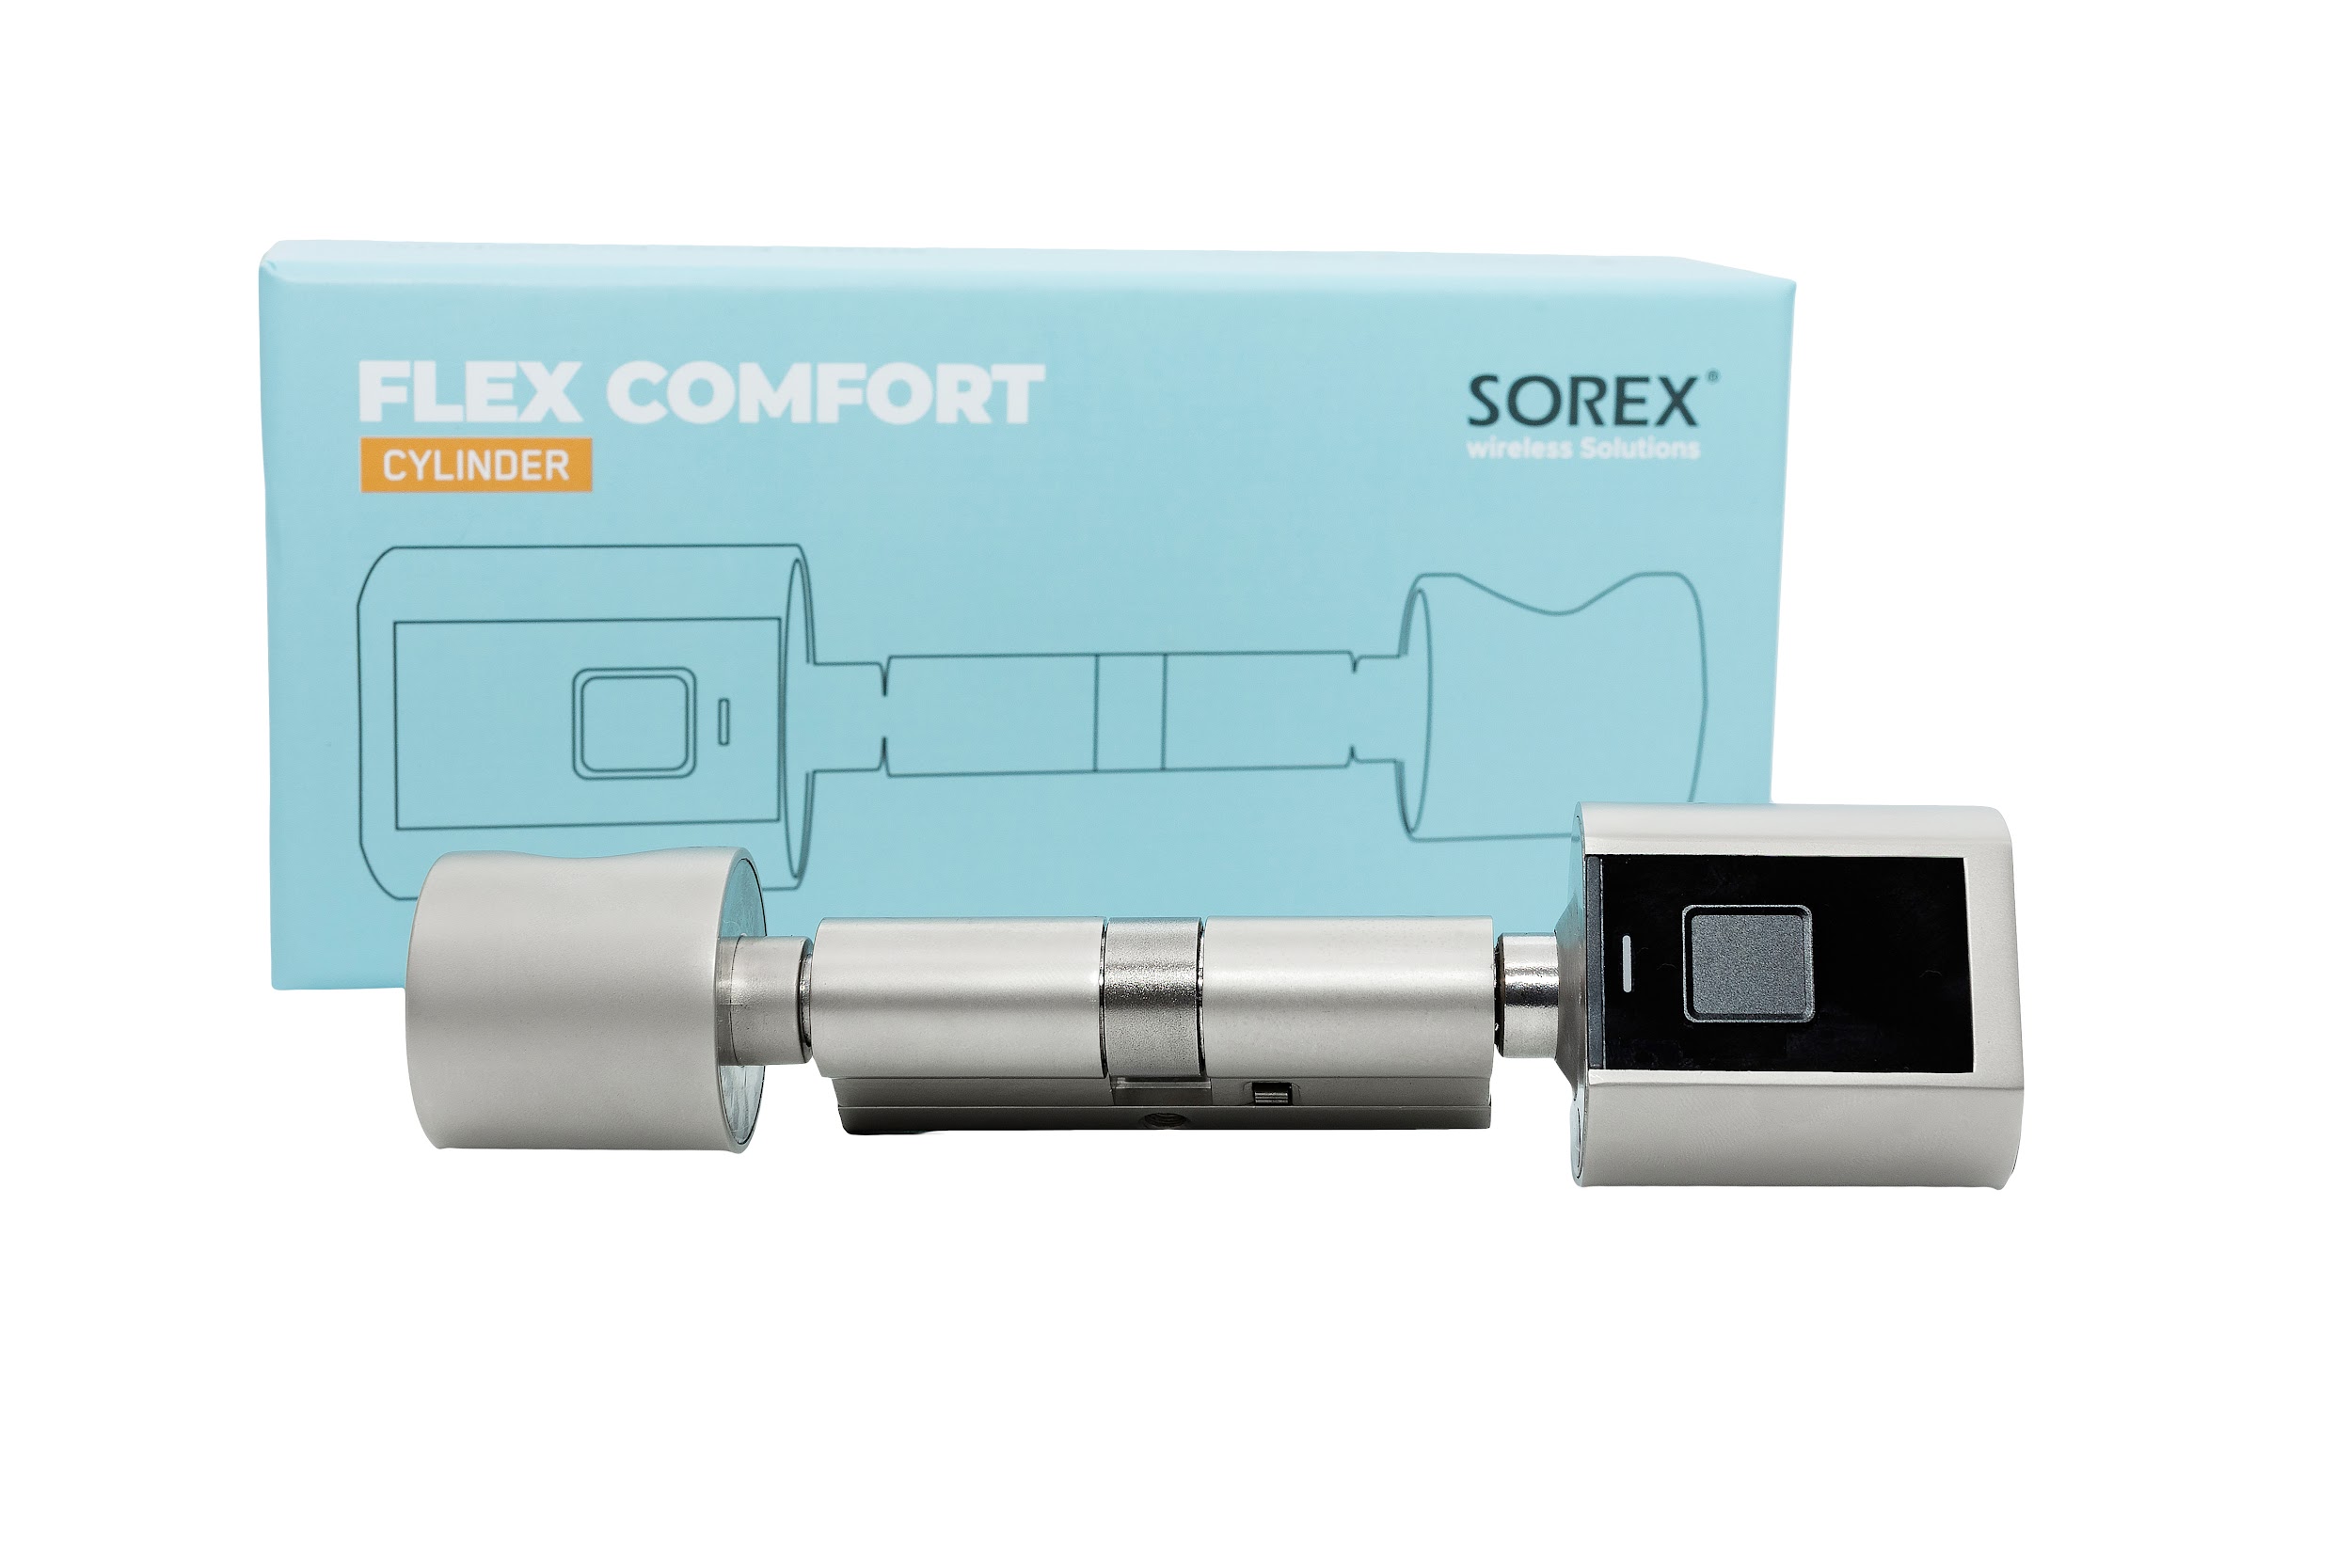 SOREX  FLEX Zahlencode Türschloss Schließzylinder & RFID Zylinder